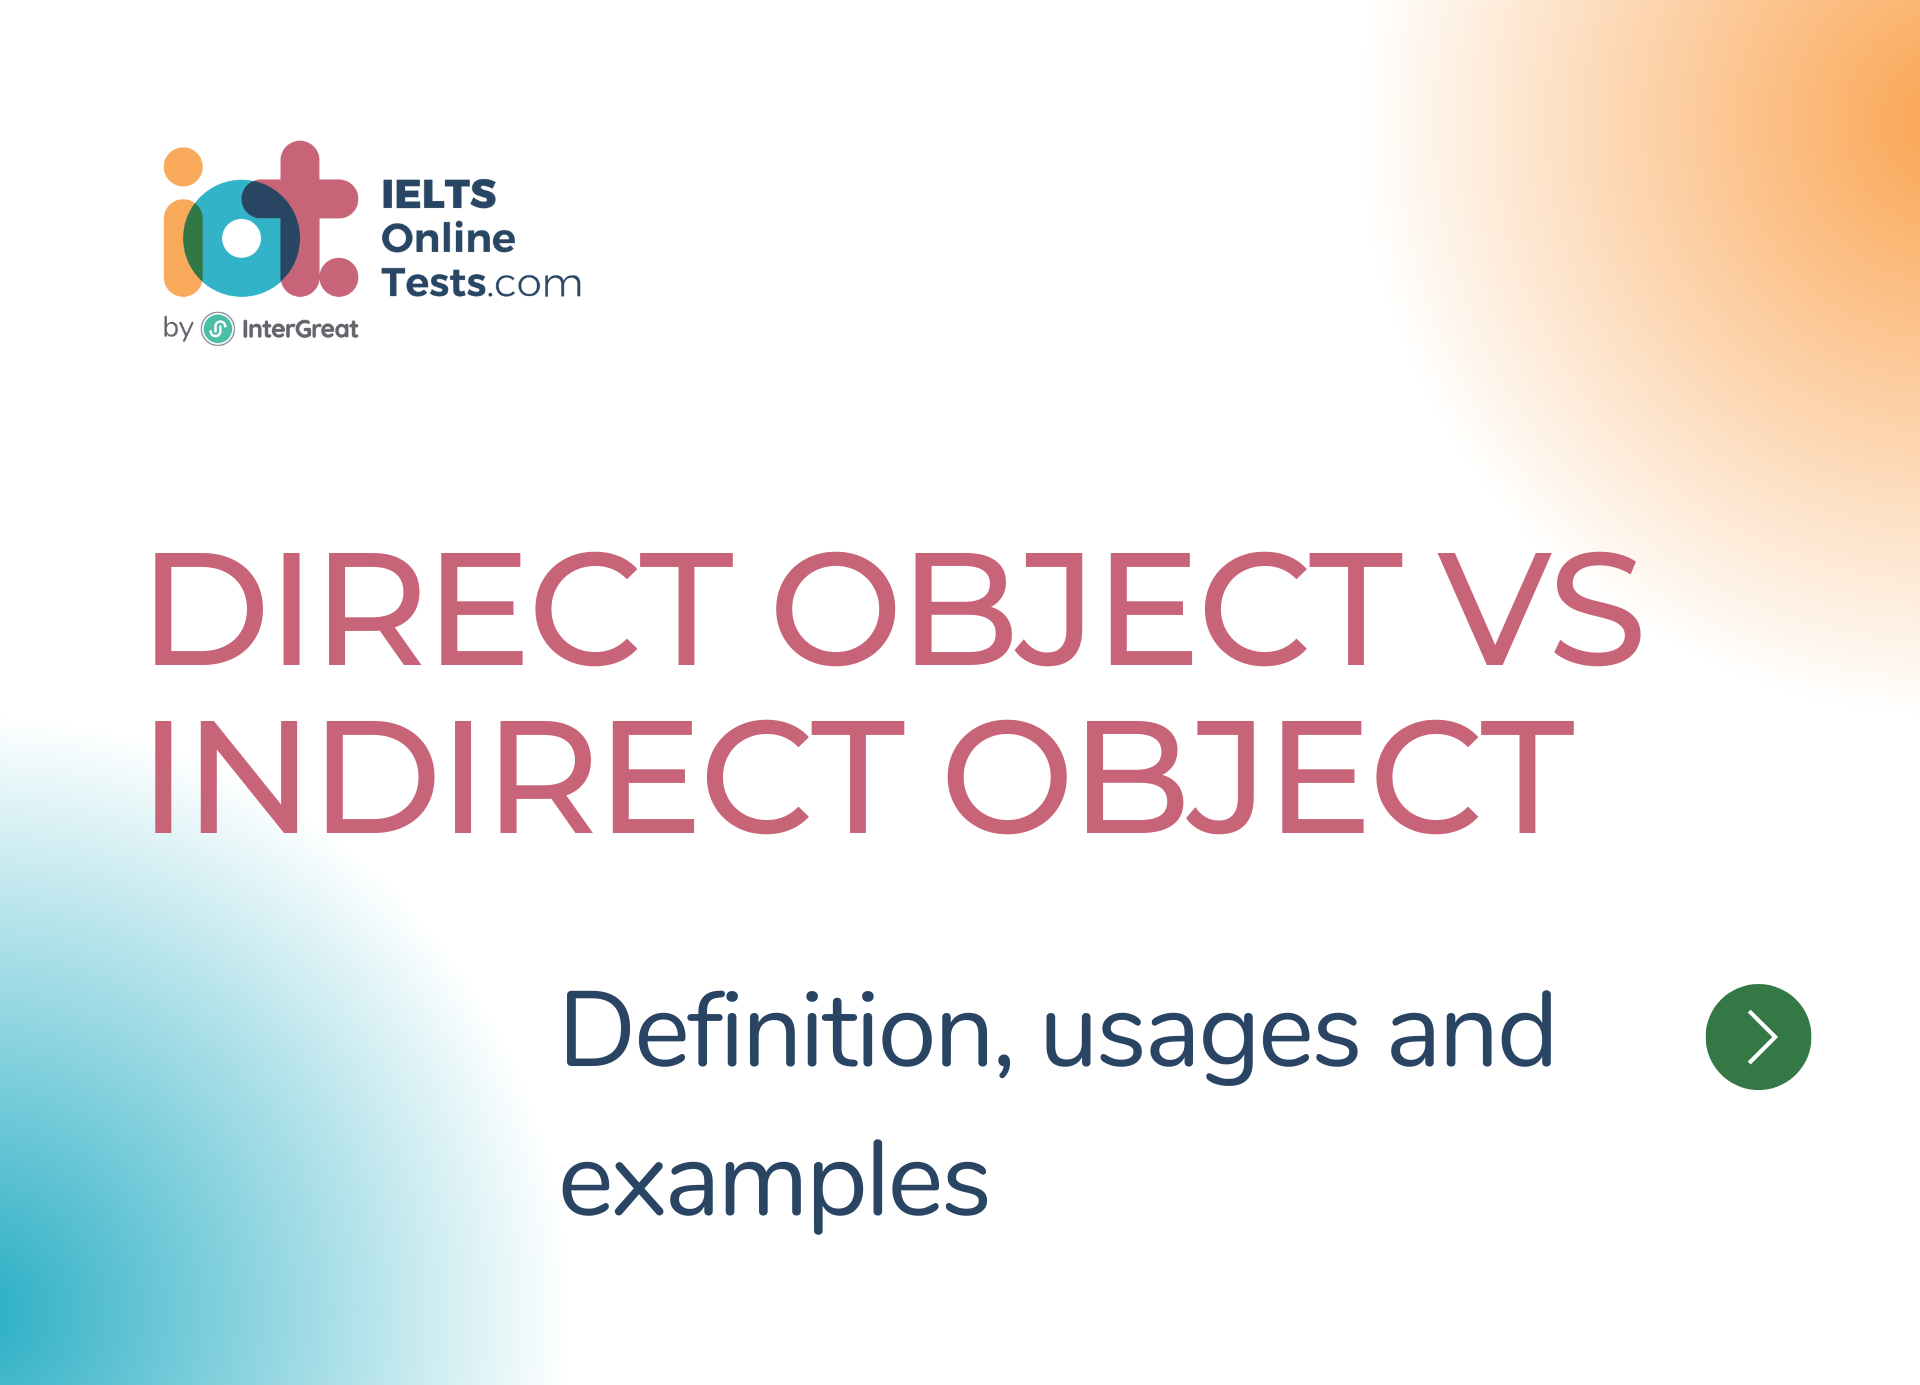 Cách phân biệt Tân ngữ trực tiếp và Tân ngữ gián tiếp (Direct Object vs Indirect Object)